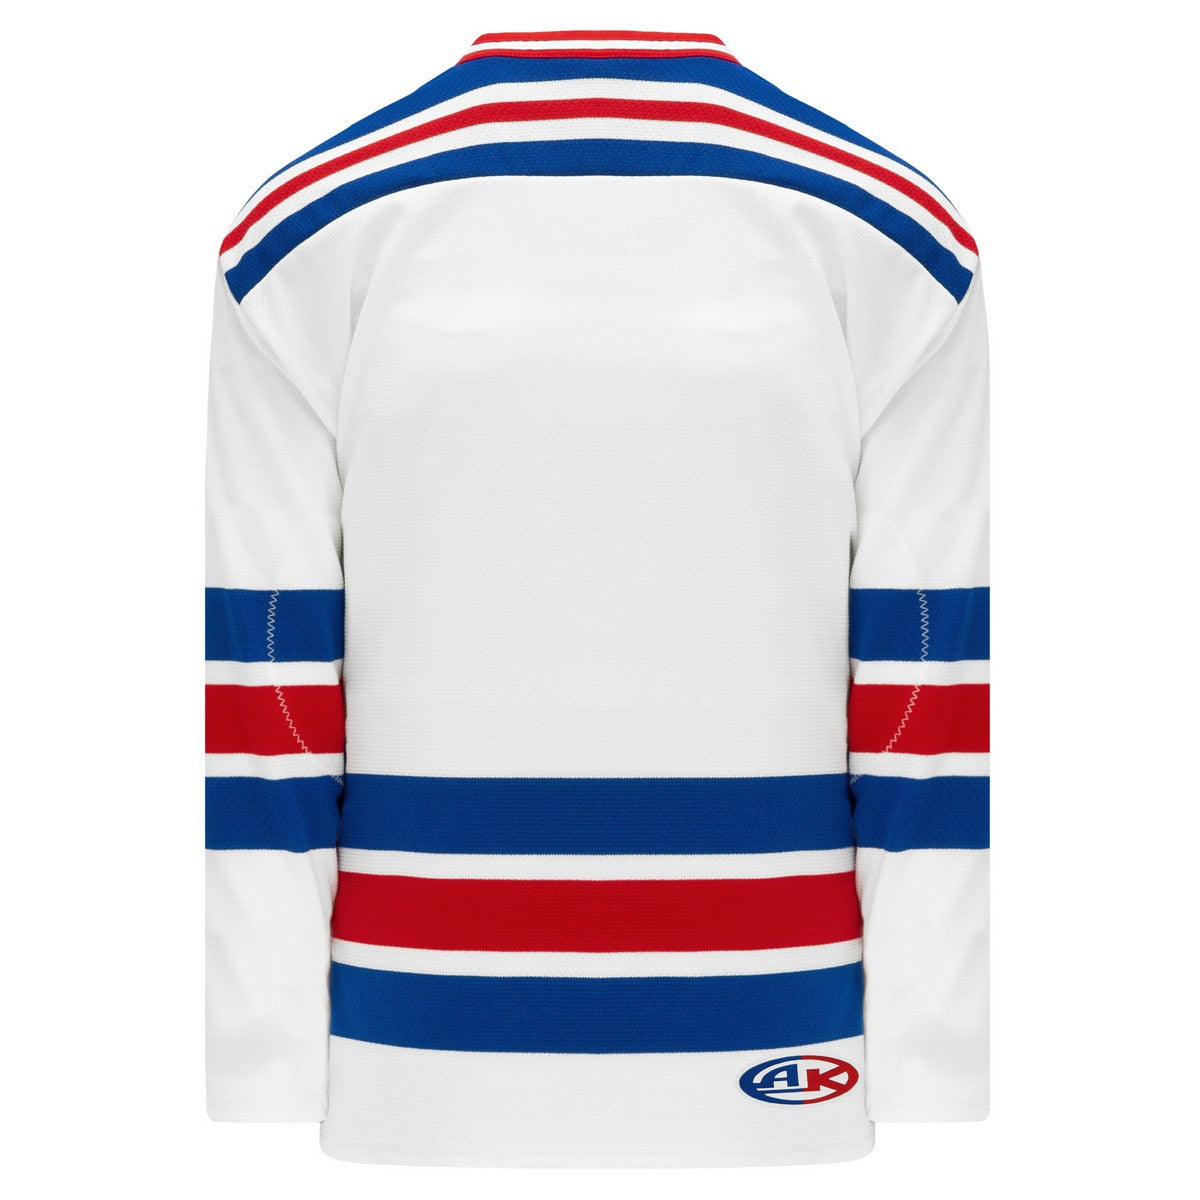 Replica 2017 New York Rangers White Hockey Jersey